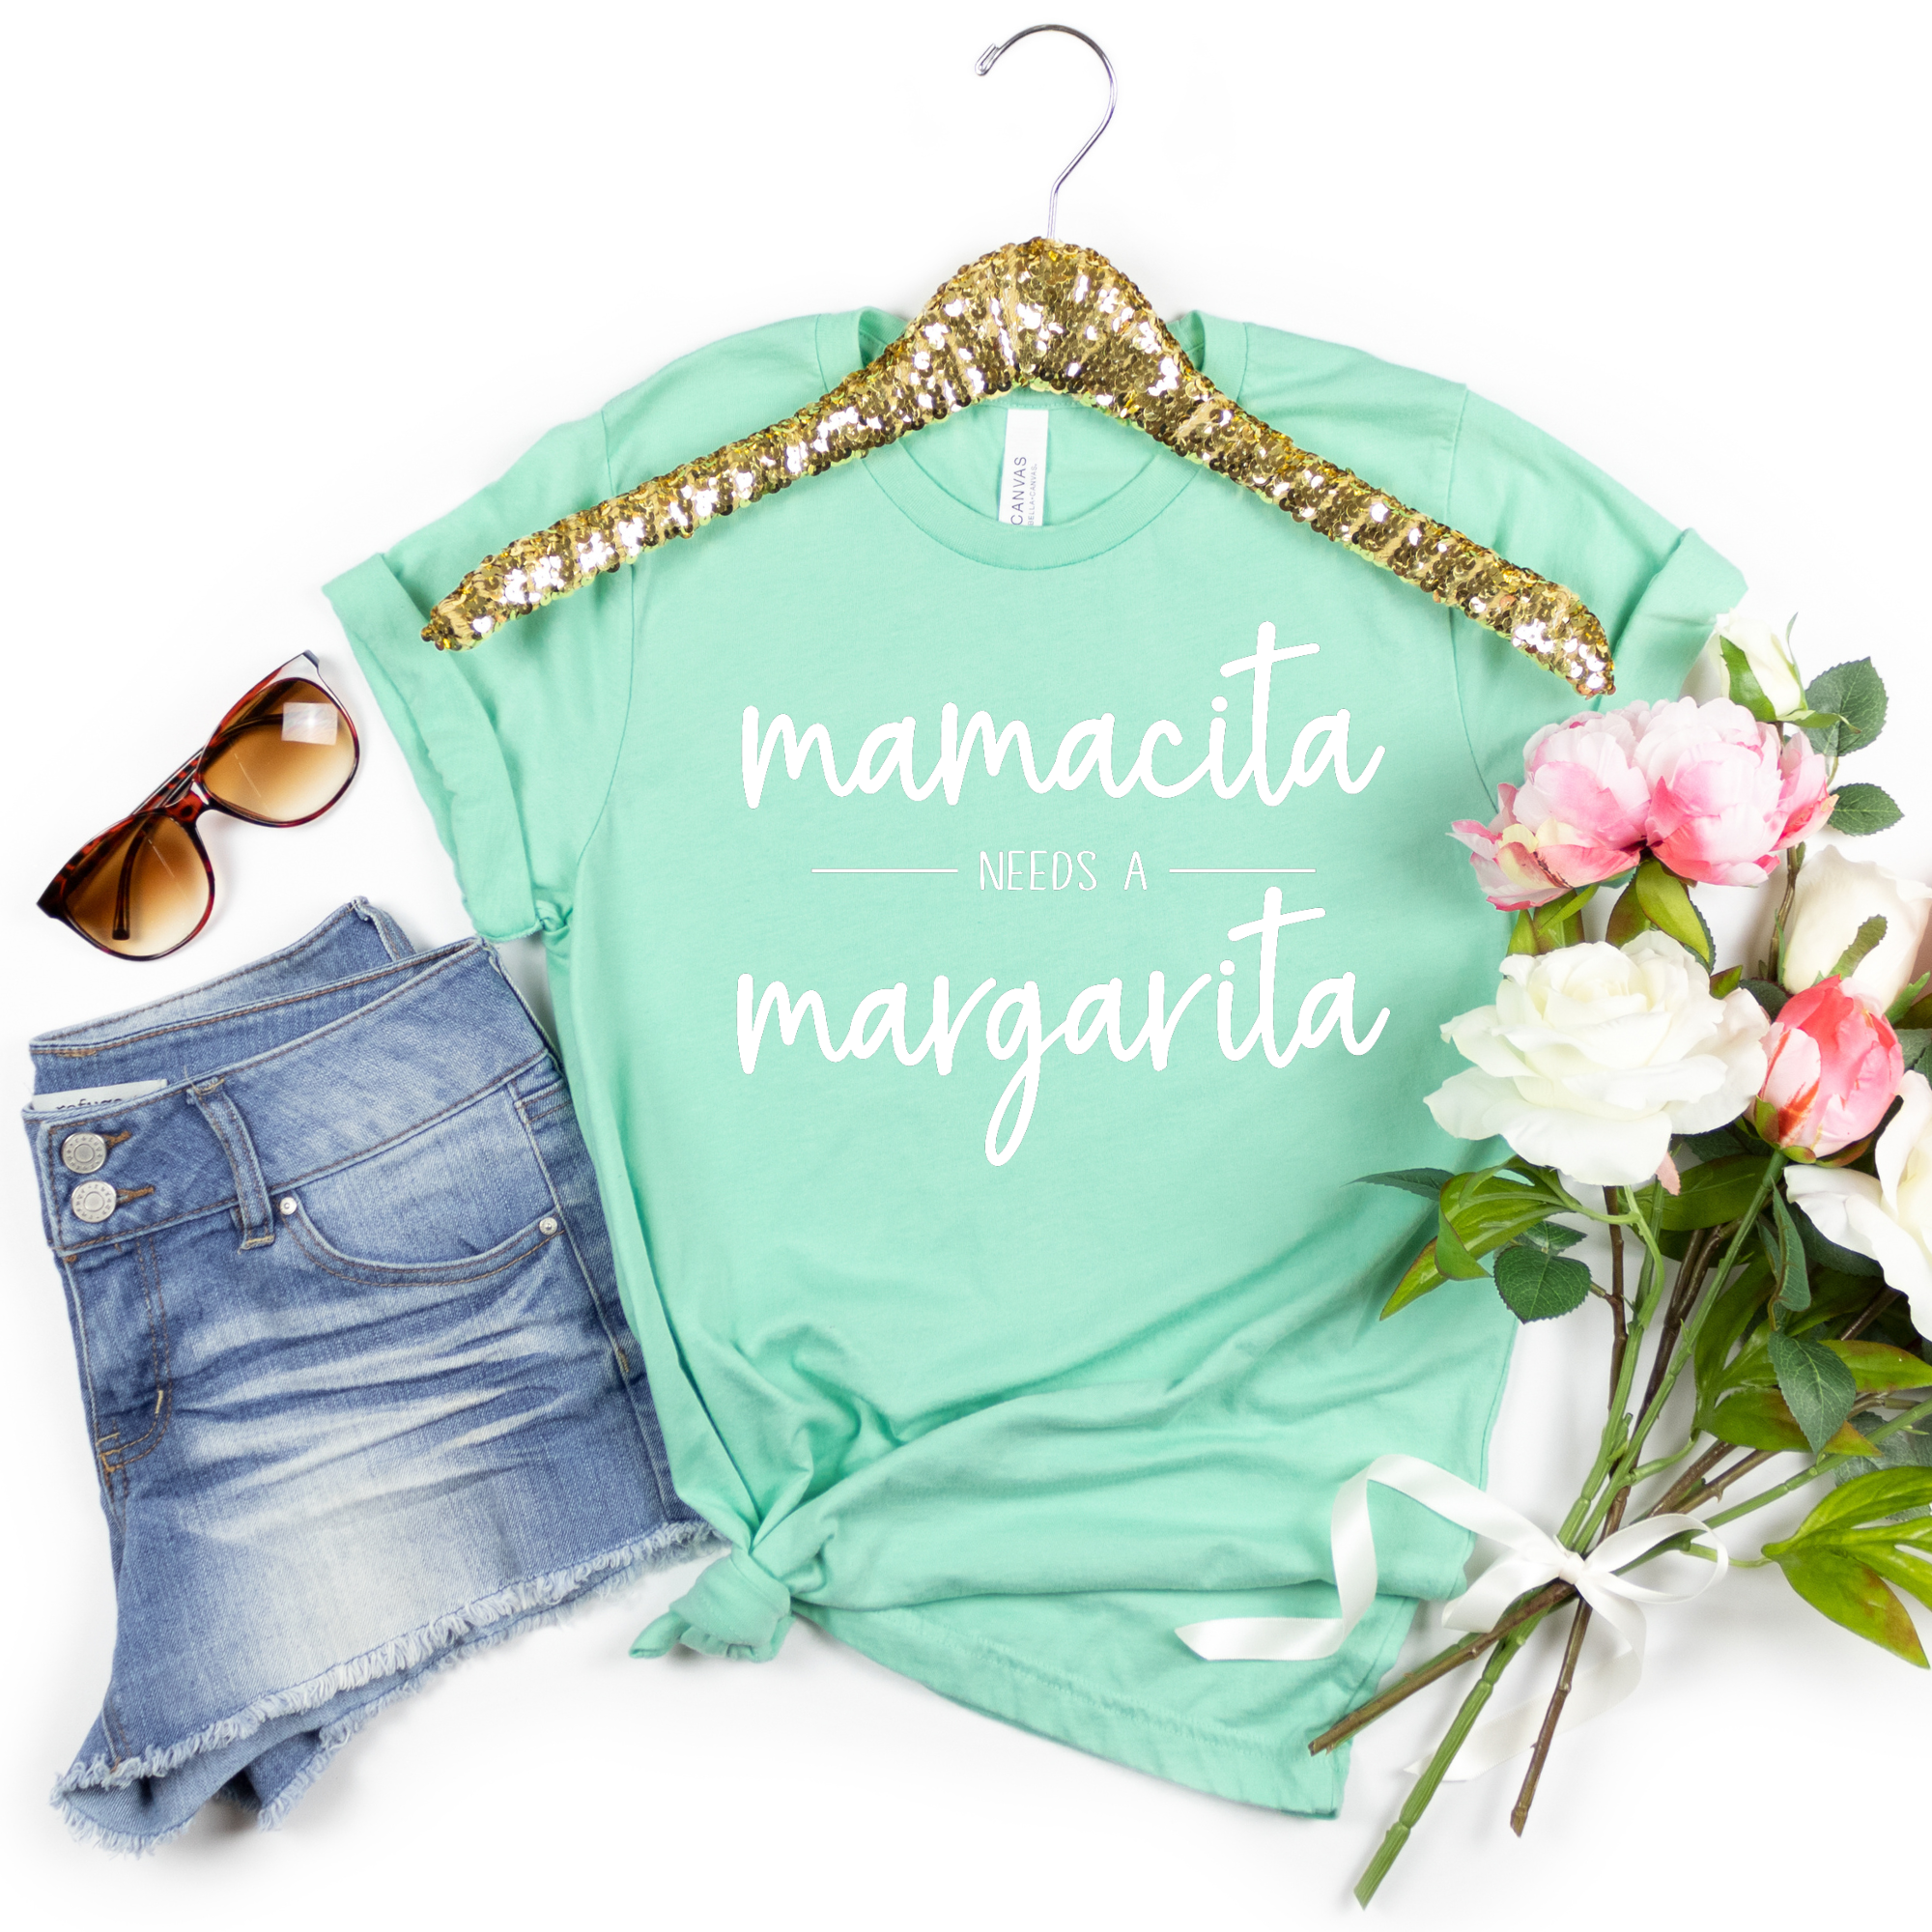 Mamacita Needs a Margarita Shirt